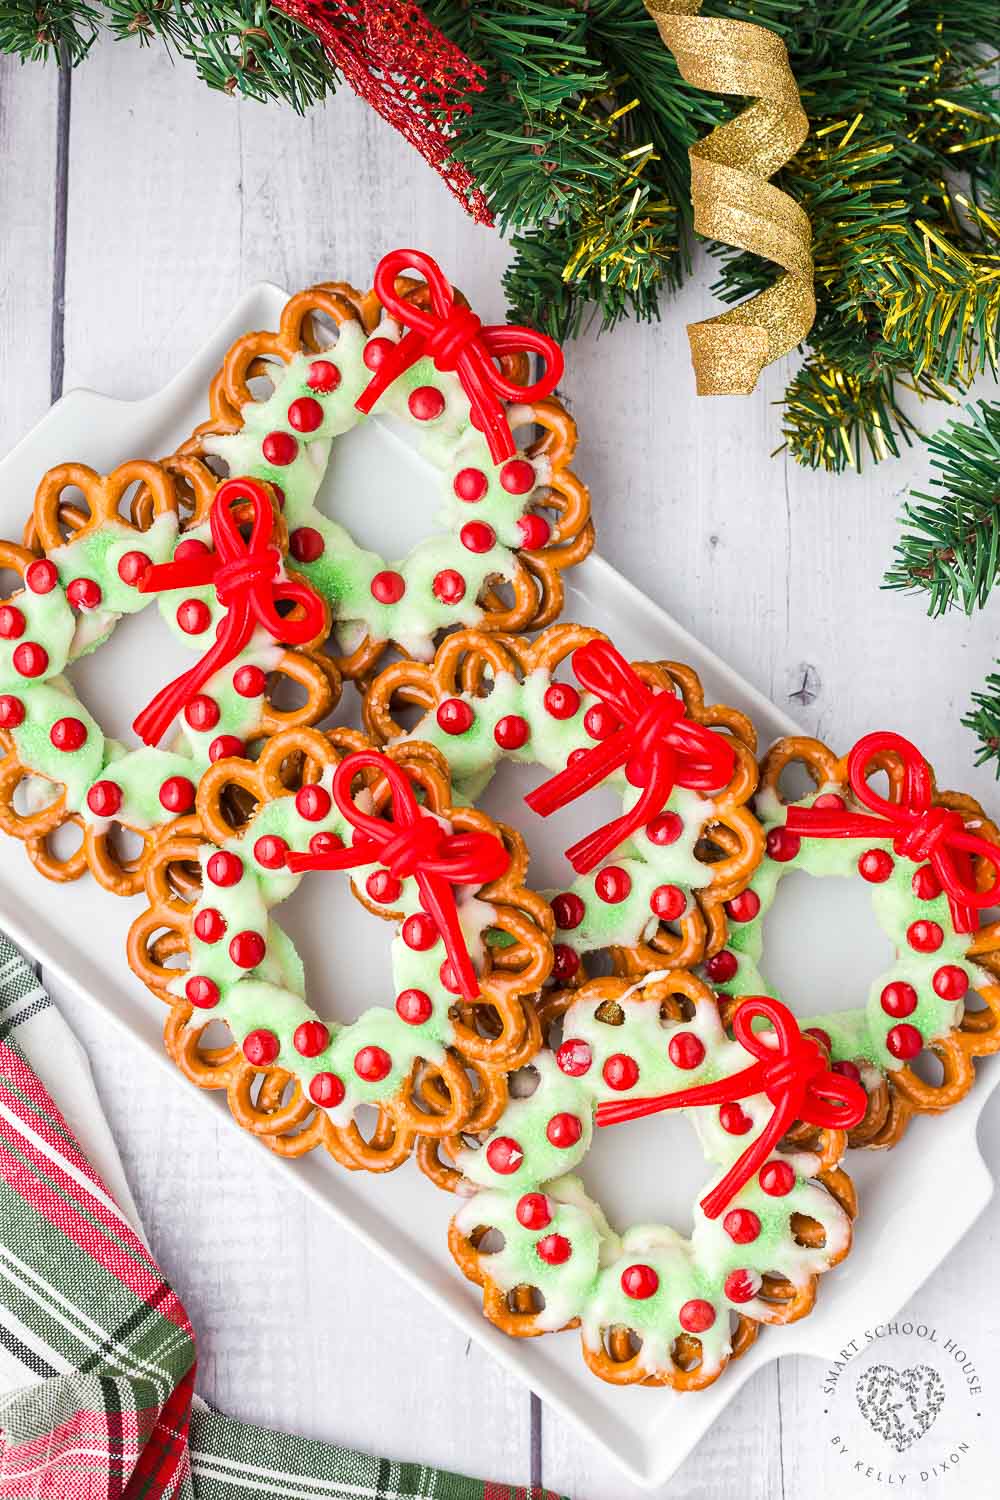 ¡Las coronas de pretzel con un lazo de regaliz rojo son una gran y festiva idea navideña!  Regalo favorito de vacaciones.